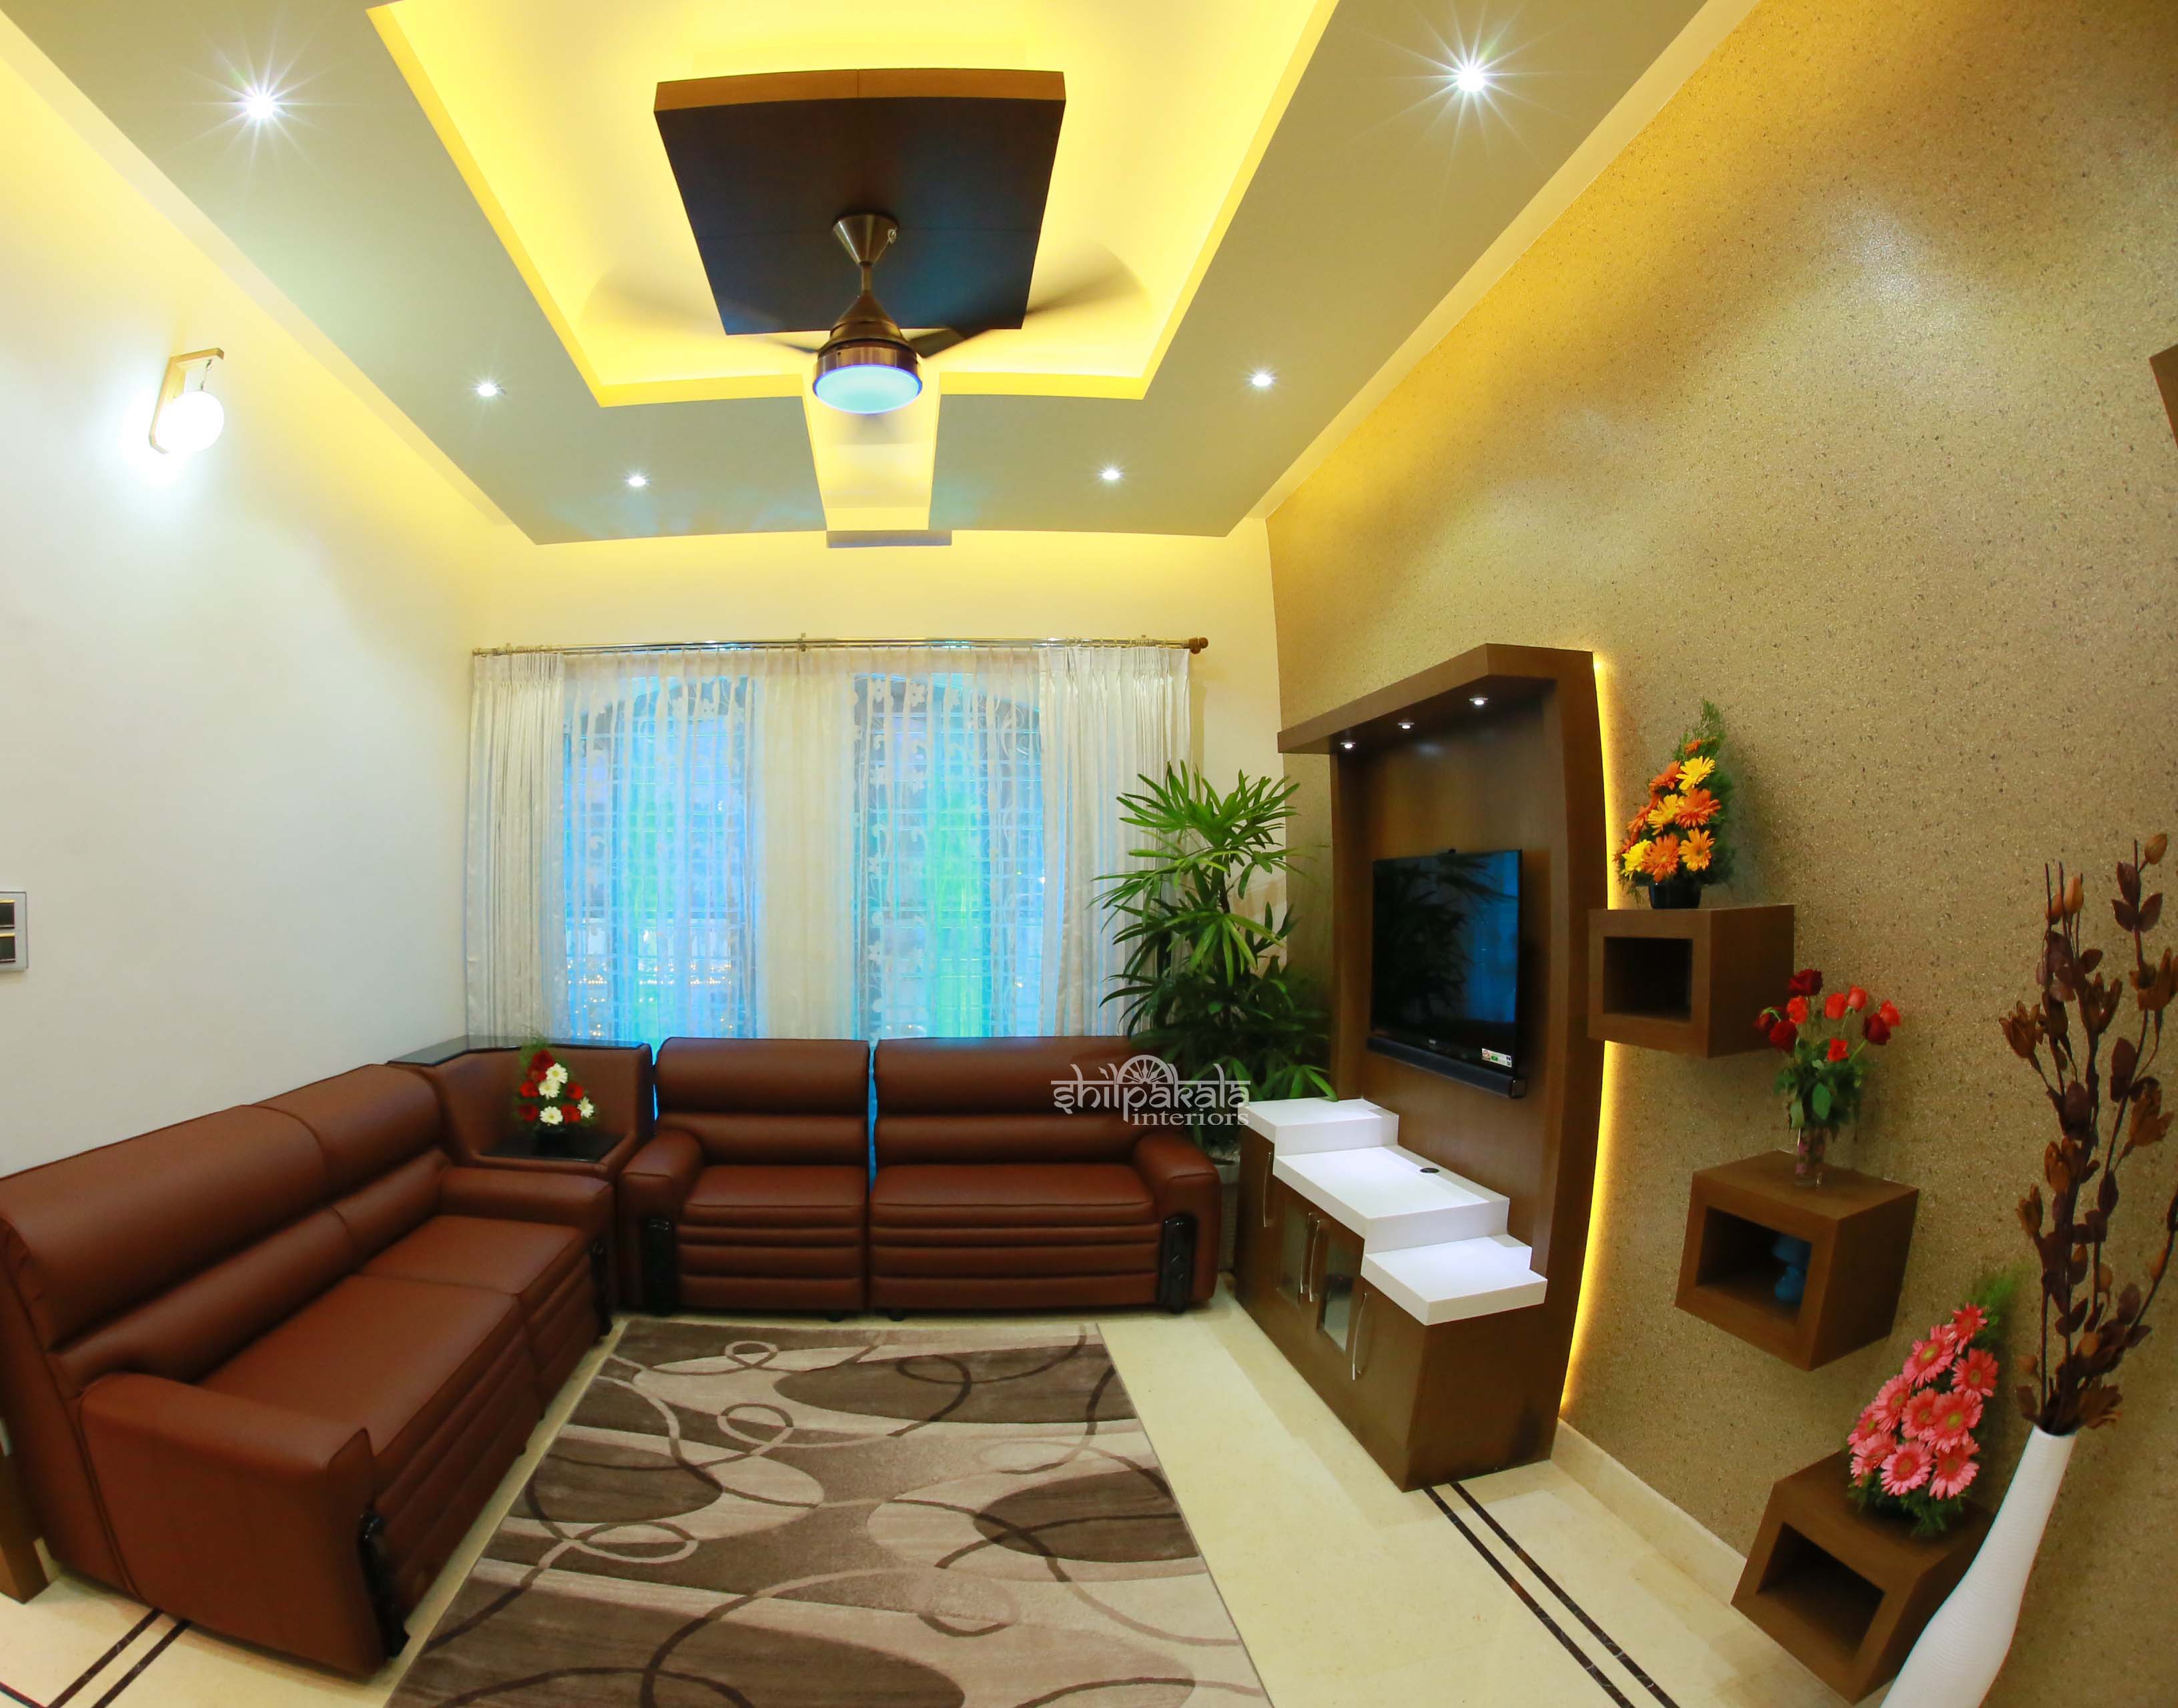 Living Room Ideas Kerala Homes | Jihanshanum